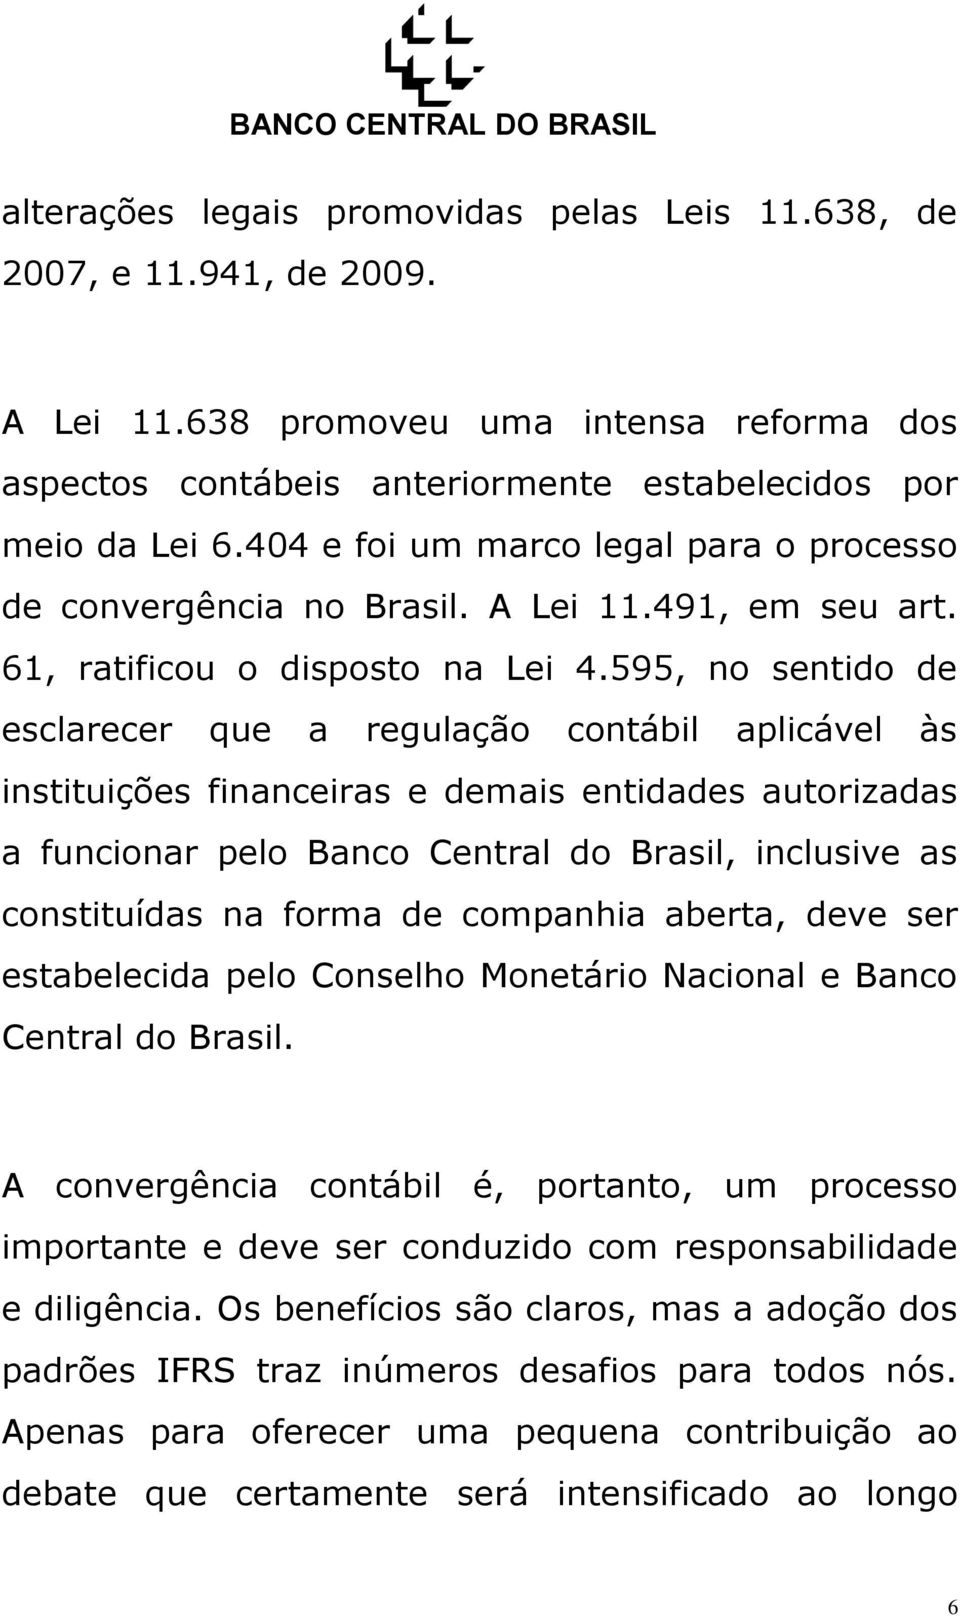 595, no sentido de esclarecer que a regulação contábil aplicável às instituições financeiras e demais entidades autorizadas a funcionar pelo Banco Central do Brasil, inclusive as constituídas na